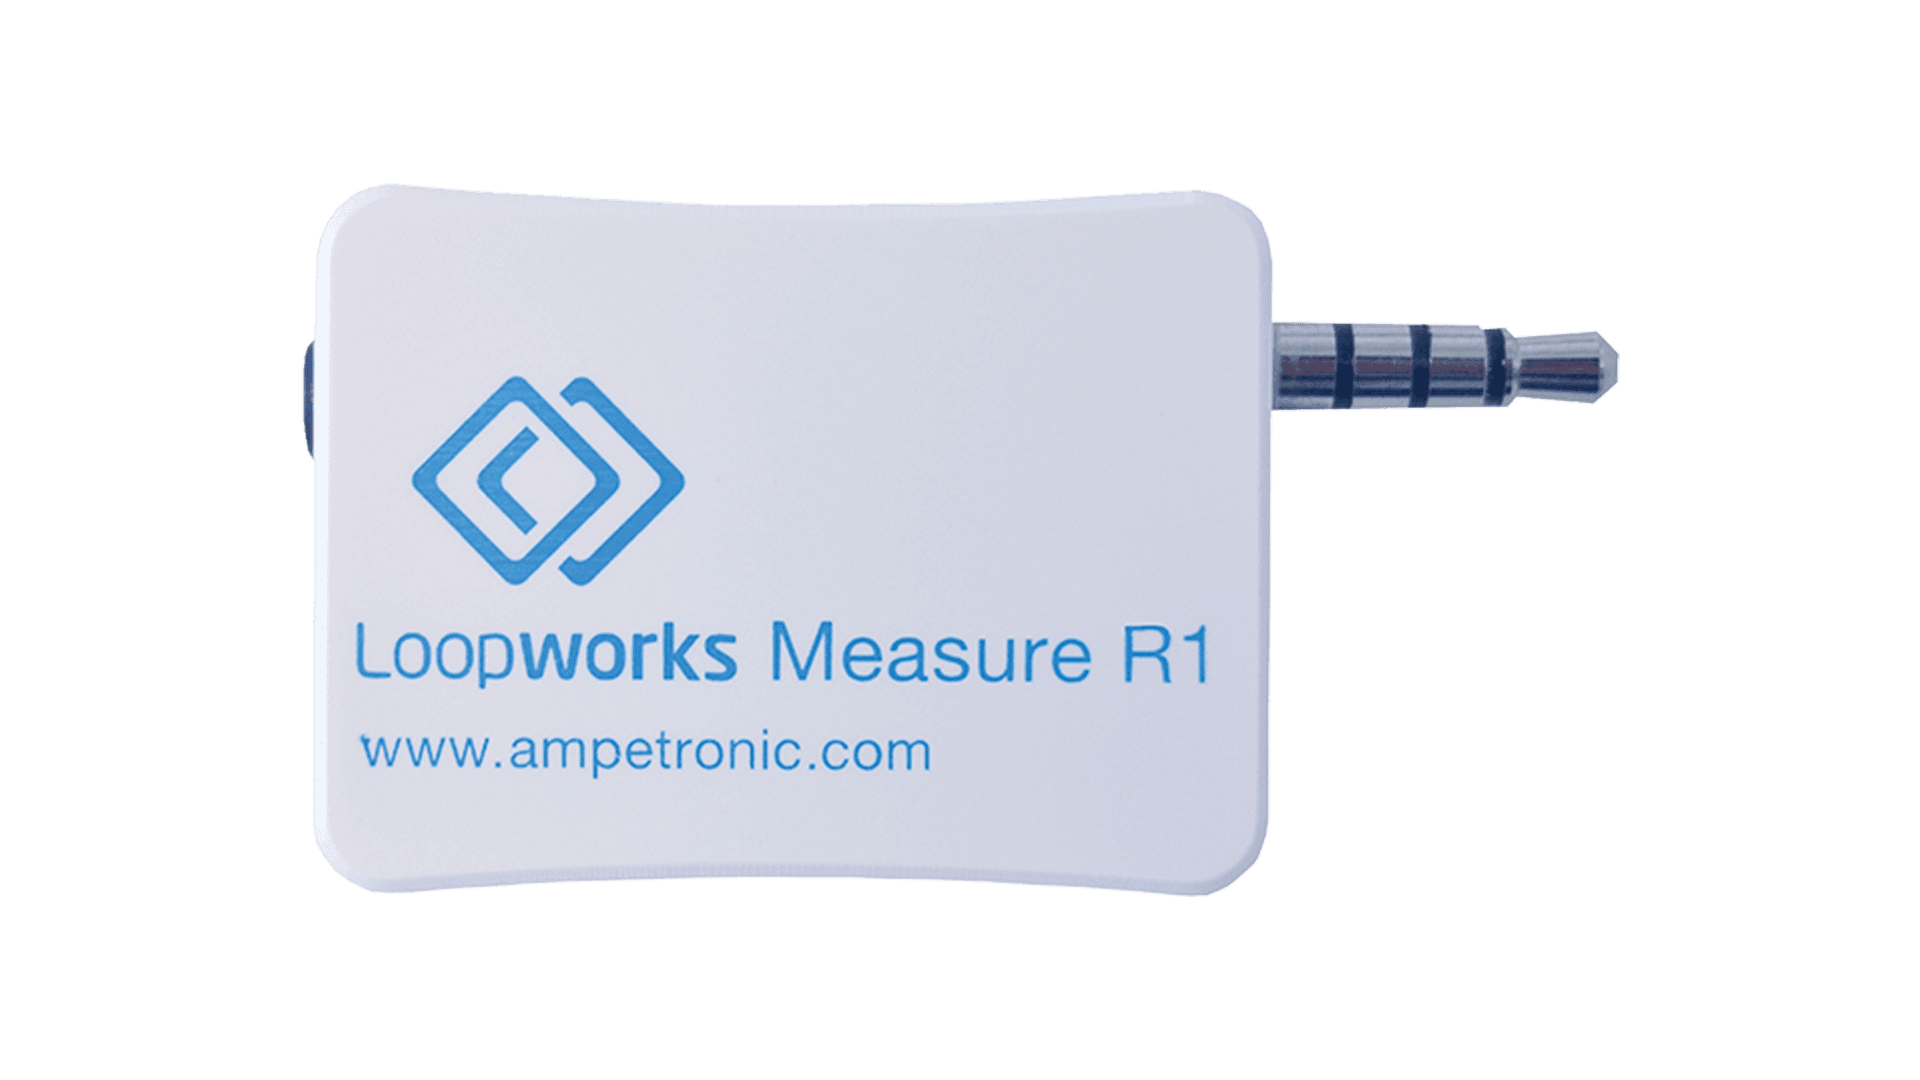 Loopworks Measure R1